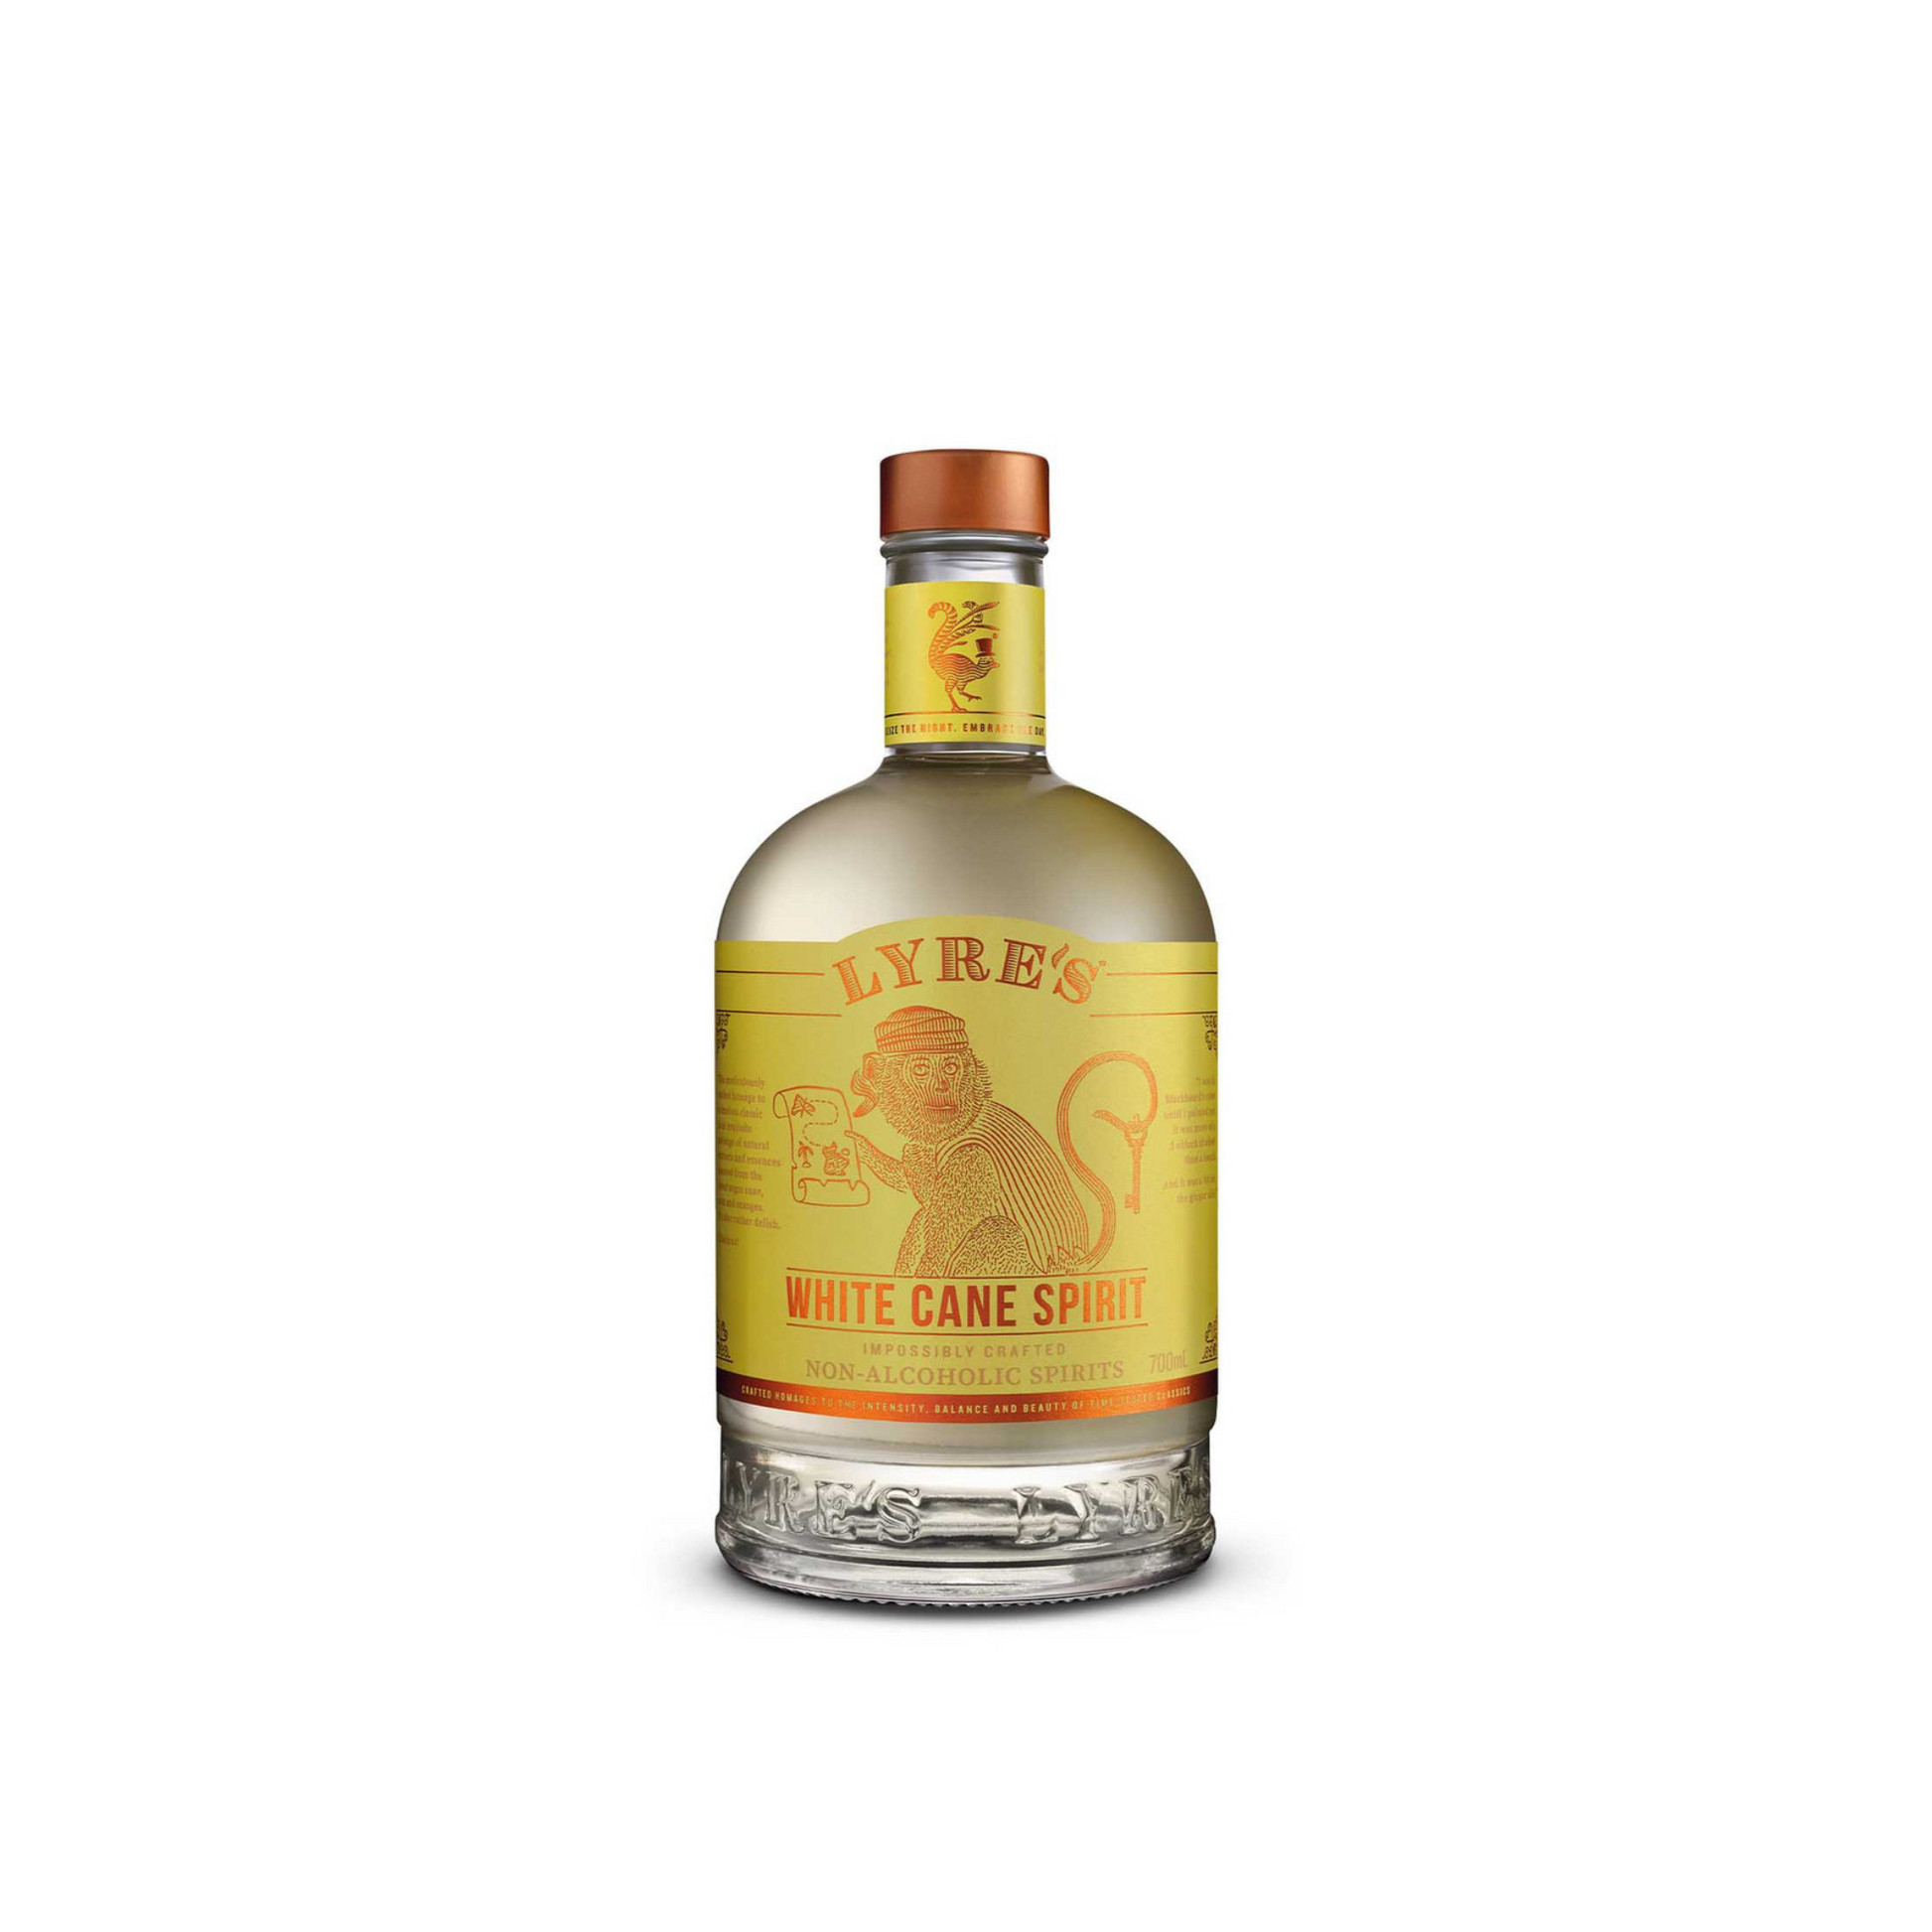 Lyre's Non-Alcoholic White Cane Spirit Rum